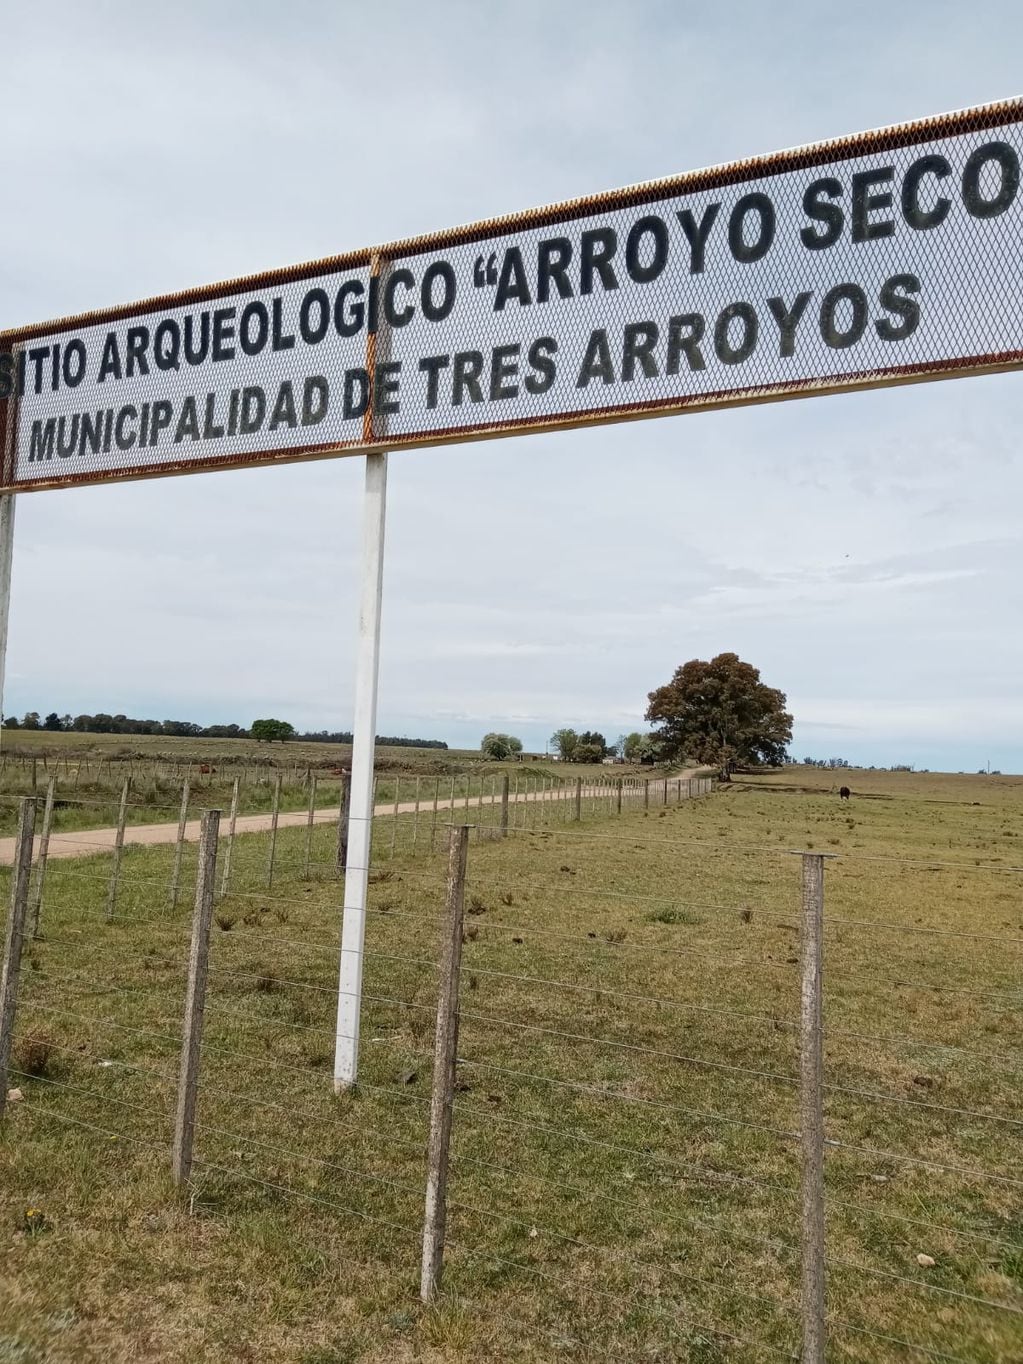 Ex sitio Arroyo Seco, que el sábado recibe la nueva cartelería, según la Ordenanaza 7489/2022